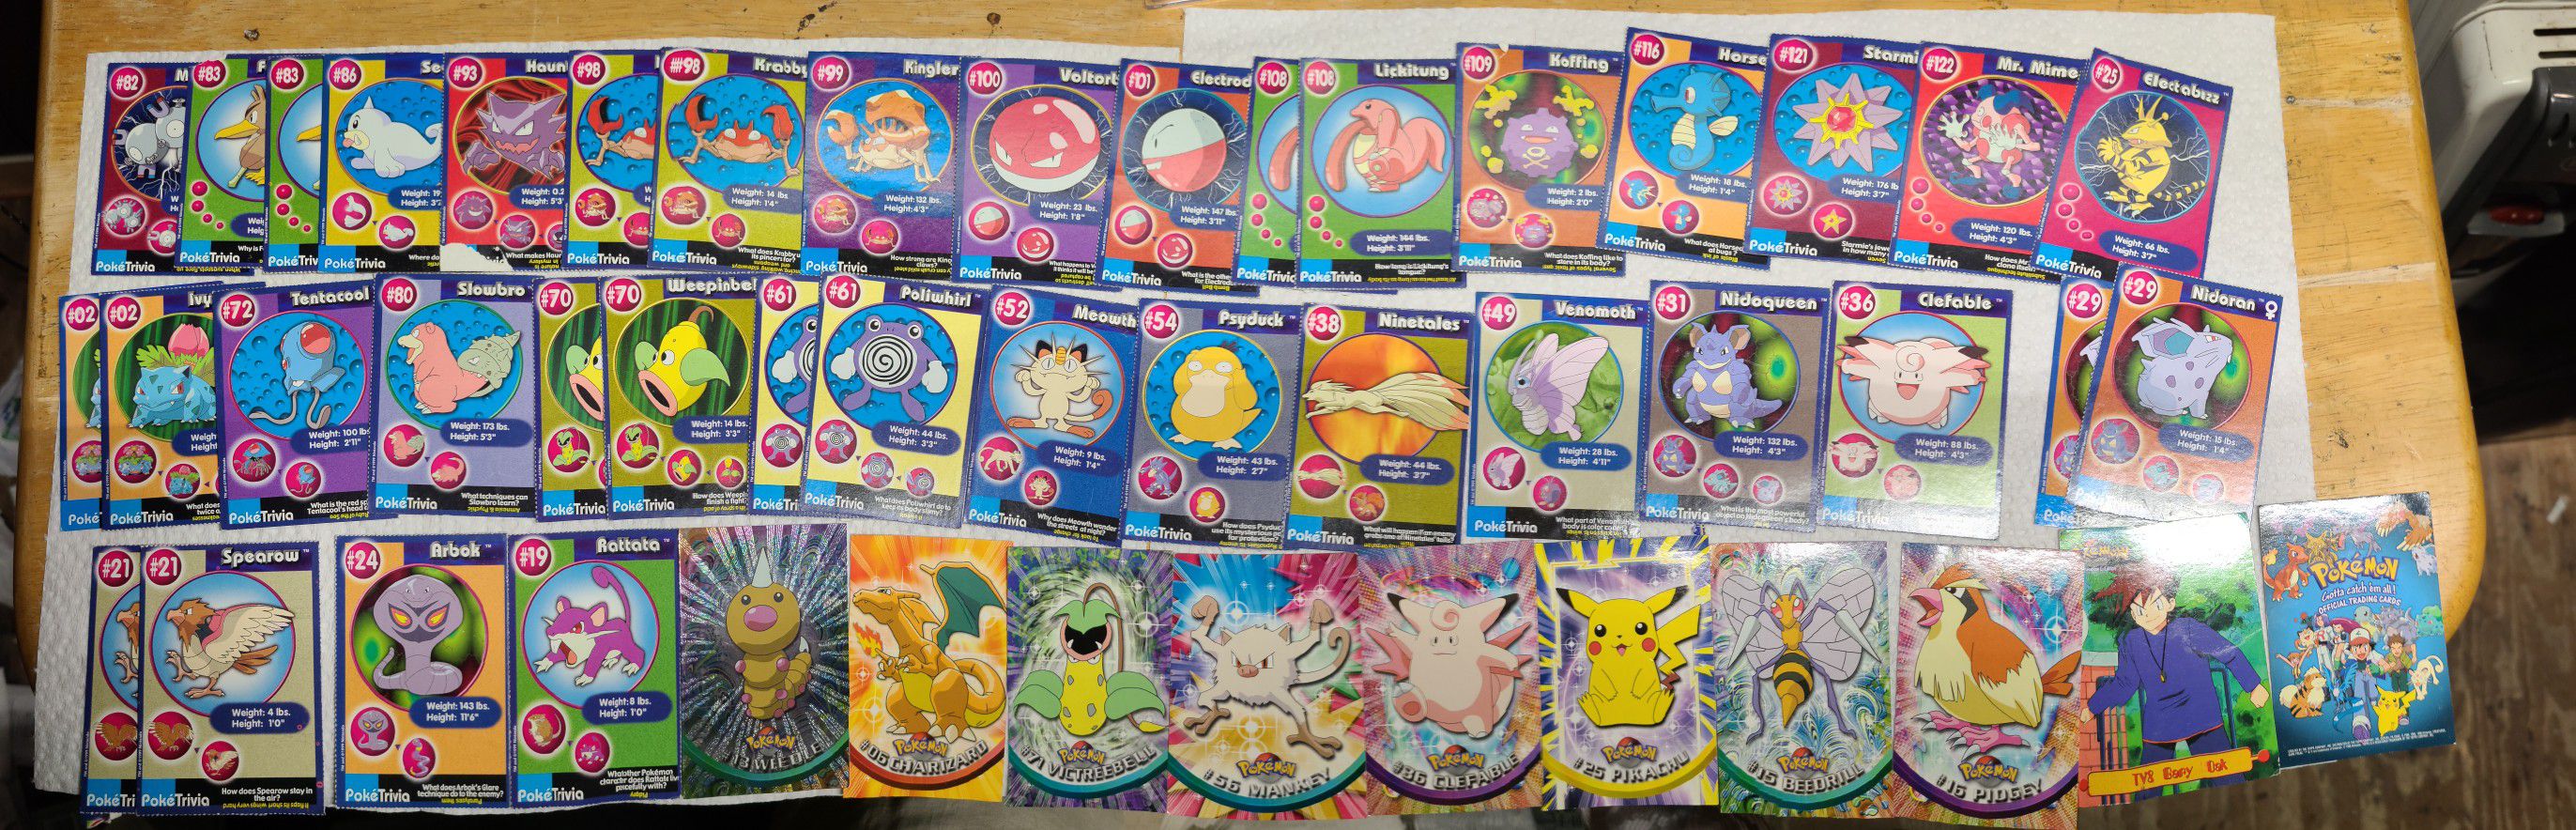 Pokemon cards 1999 - 2020 (NOT A LOT)